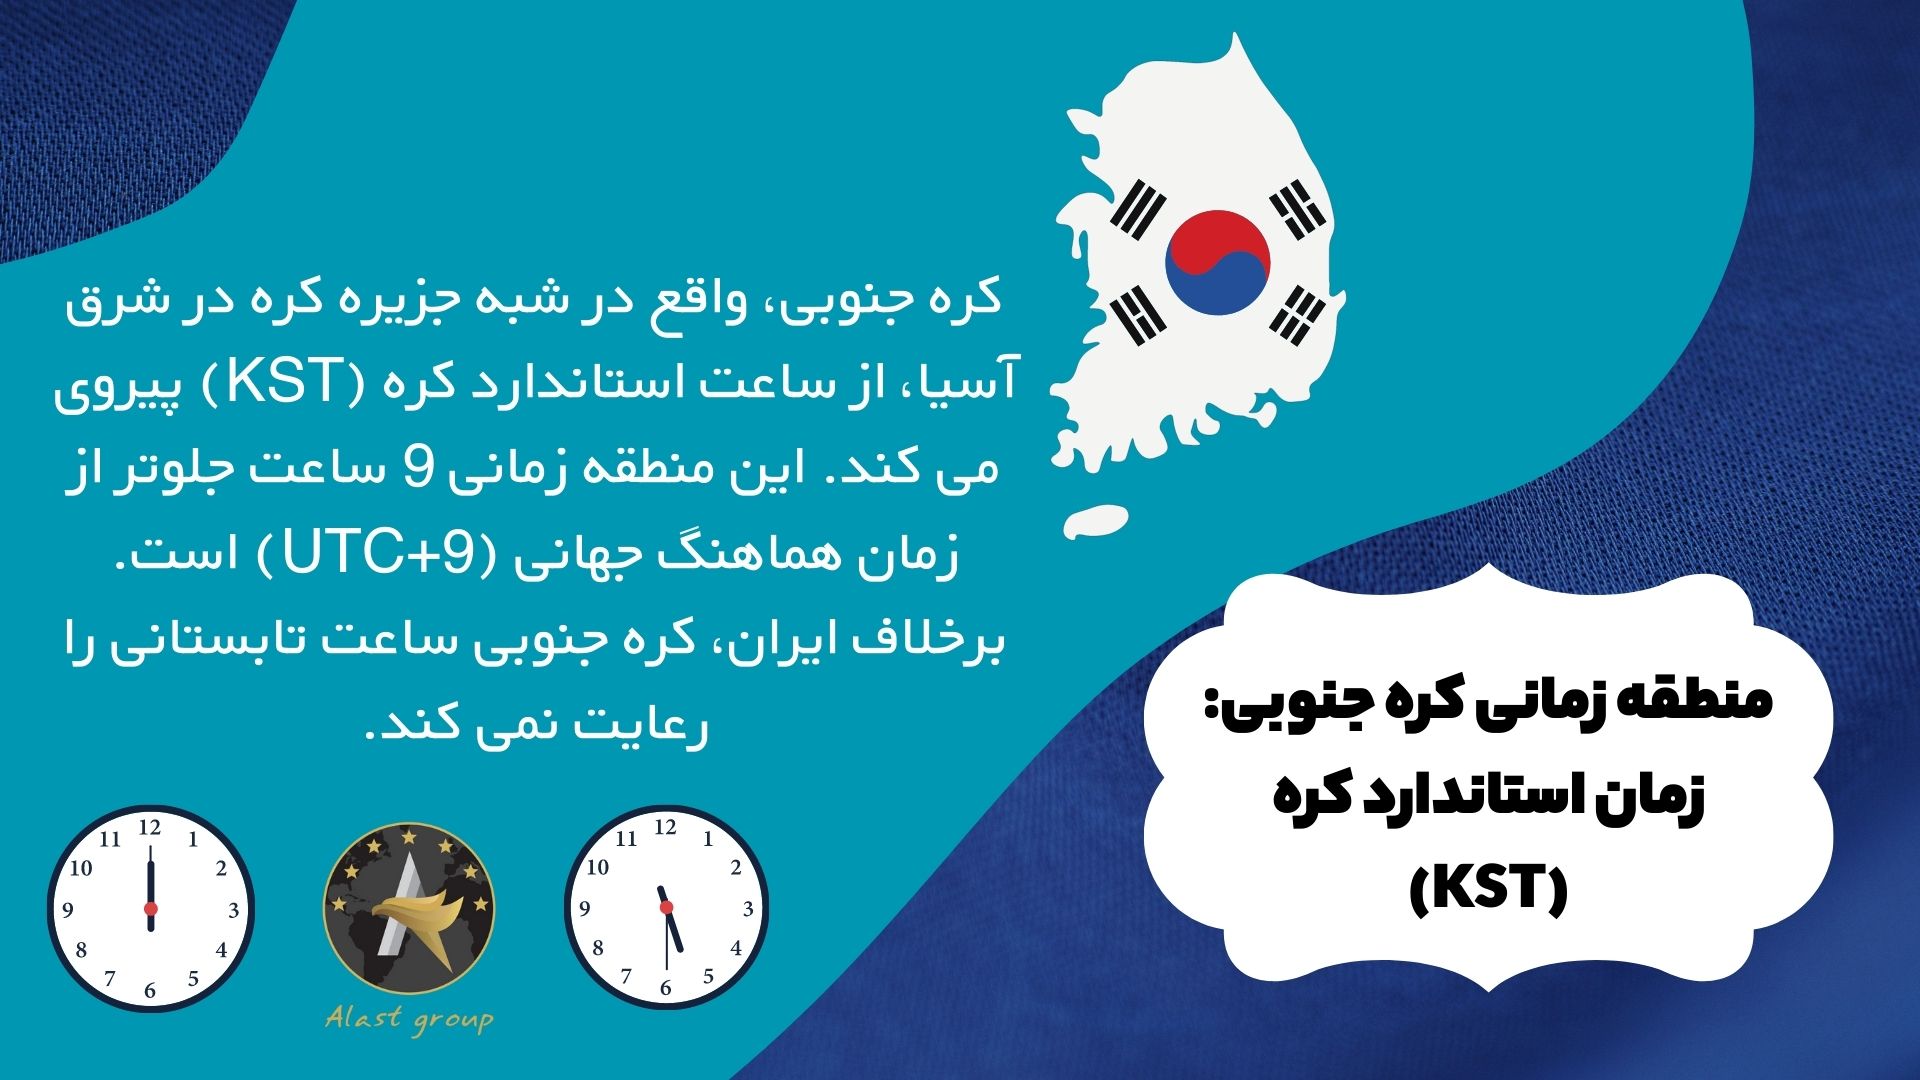 منطقه زمانی کره جنوبی: زمان استاندارد کره (KST)